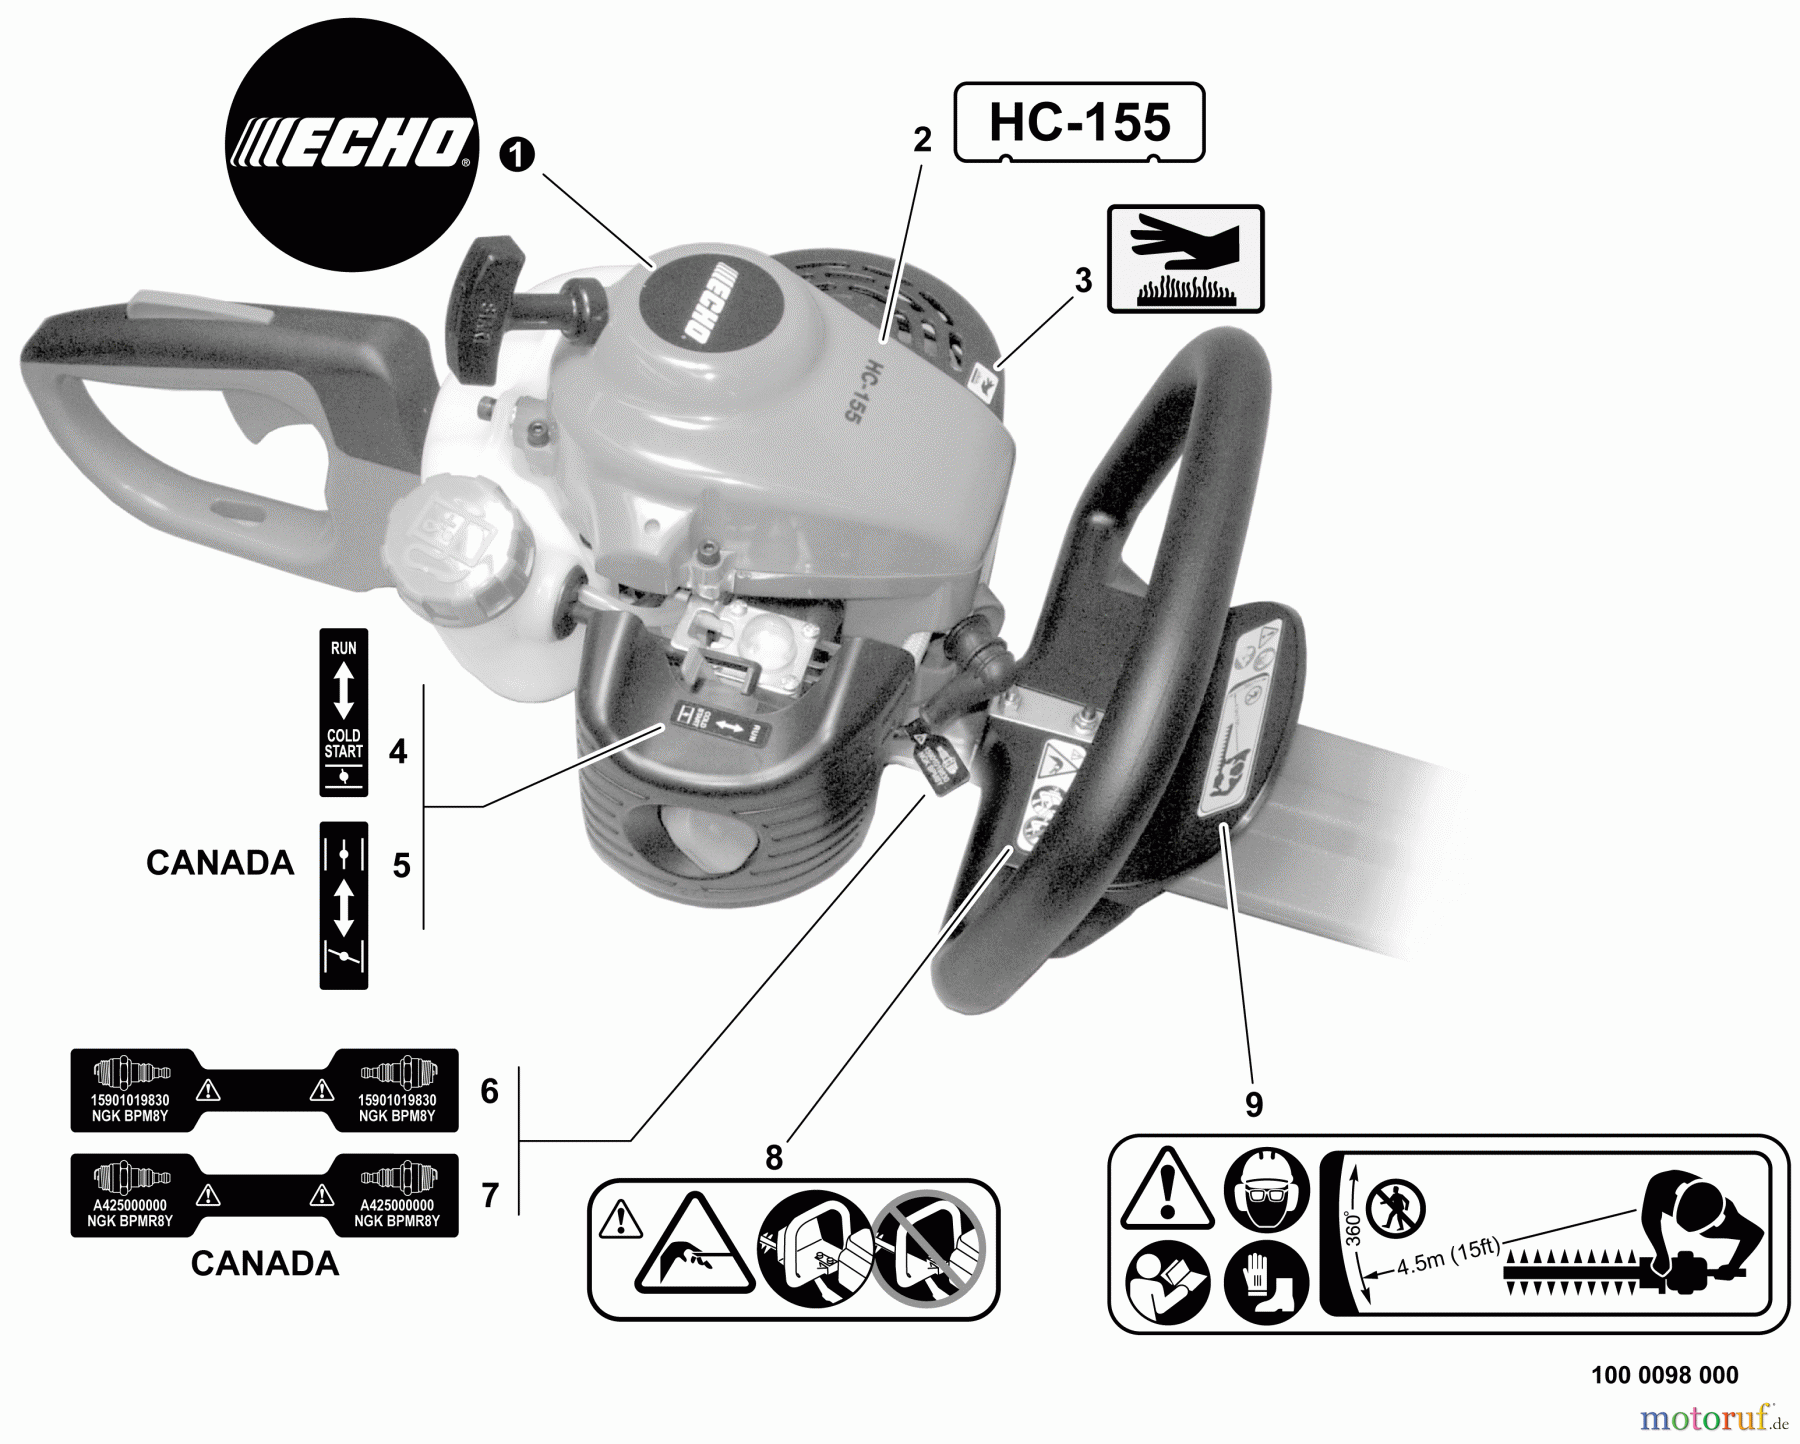  Echo Heckenscheren HC-155 - Echo Hedge Trimmer, S/N: S76212001001 - S76212999999 Labels